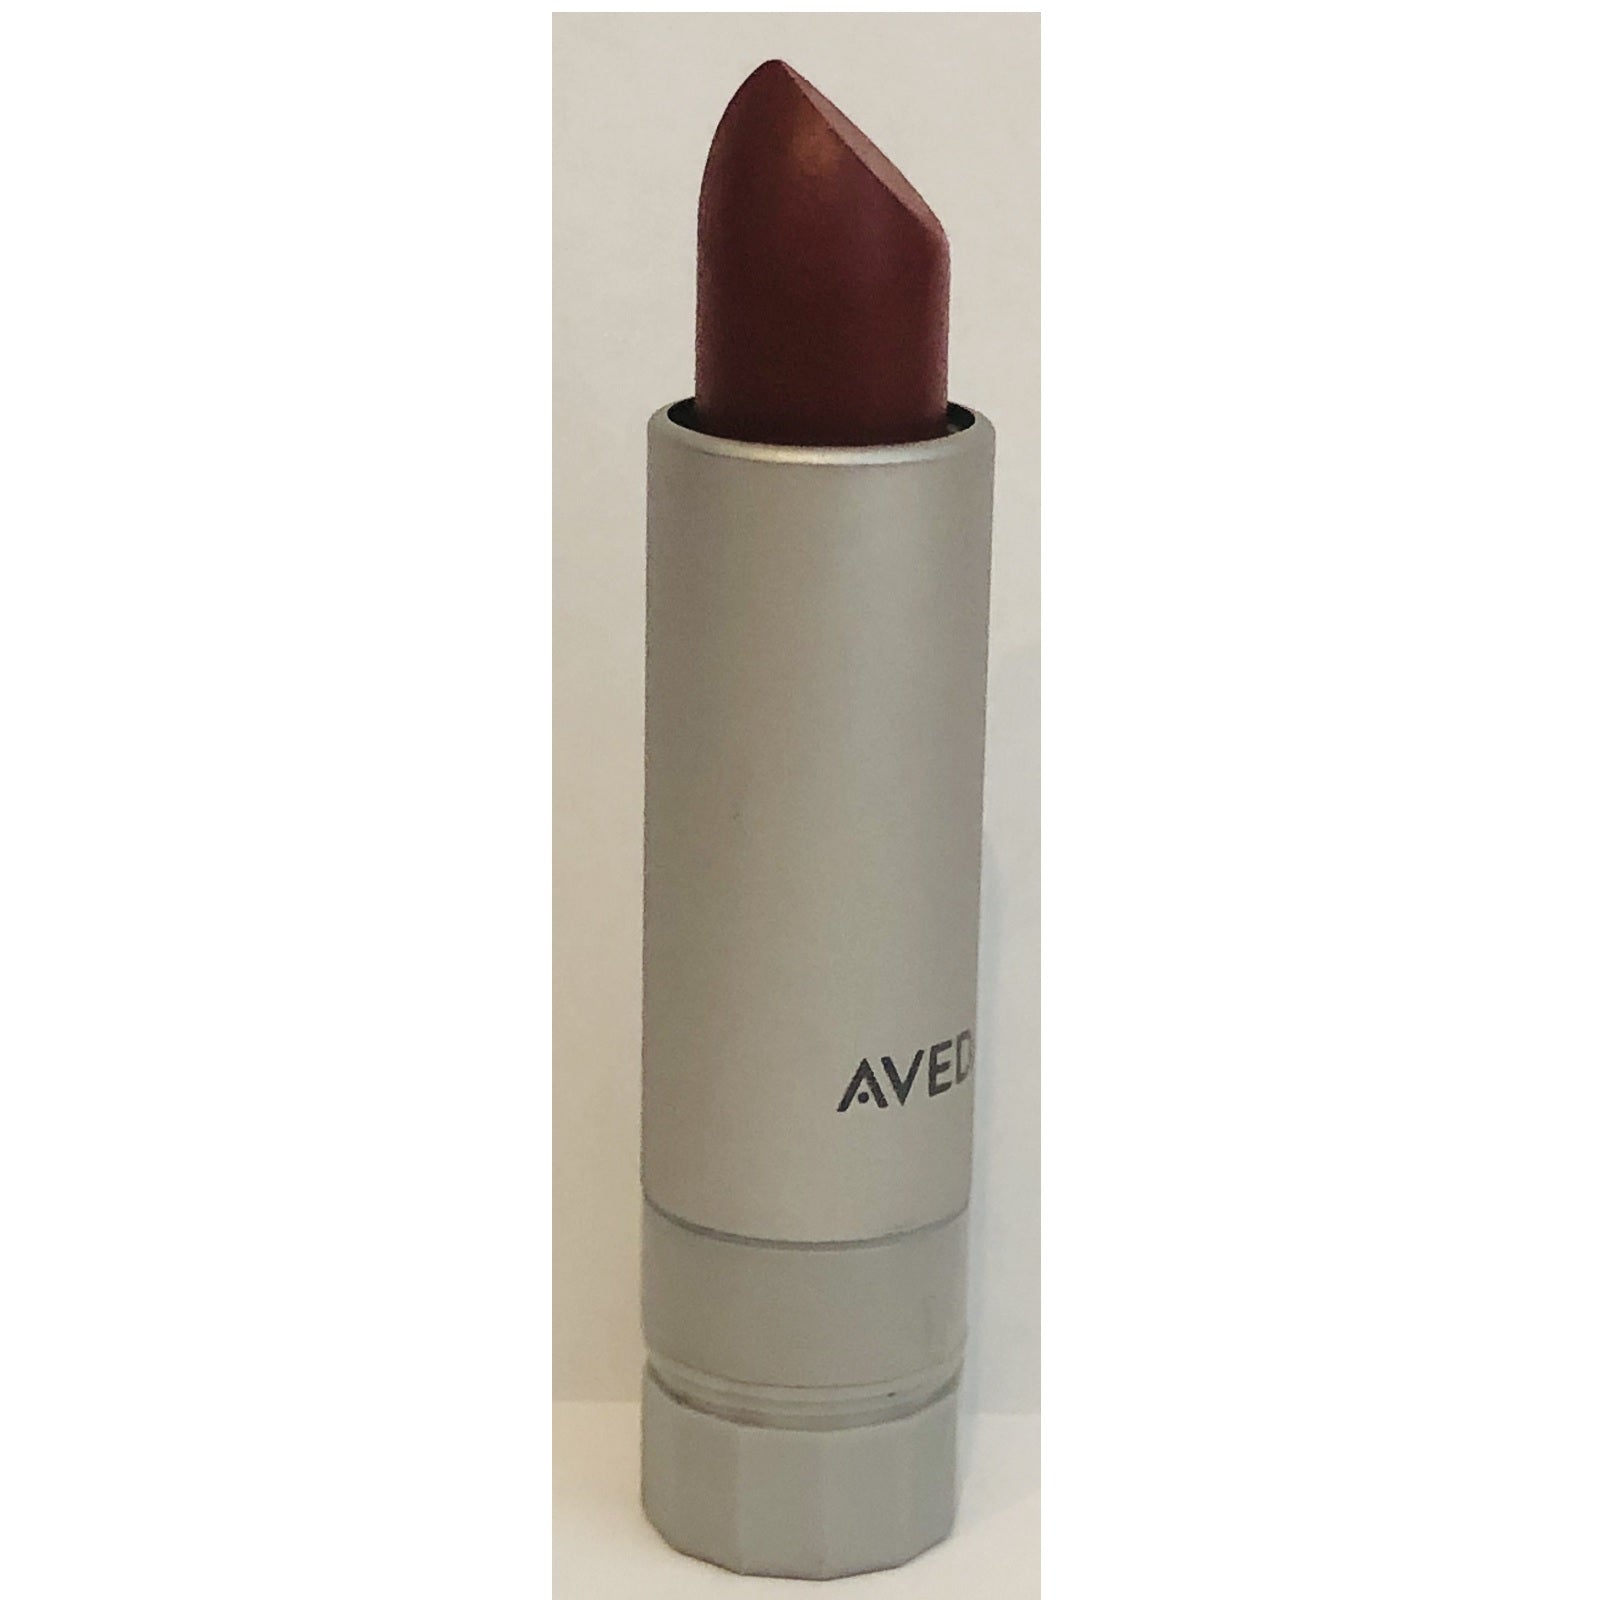 AVEDA new lipstick lip color Shizandra 420 Nourish-Mint discontinued